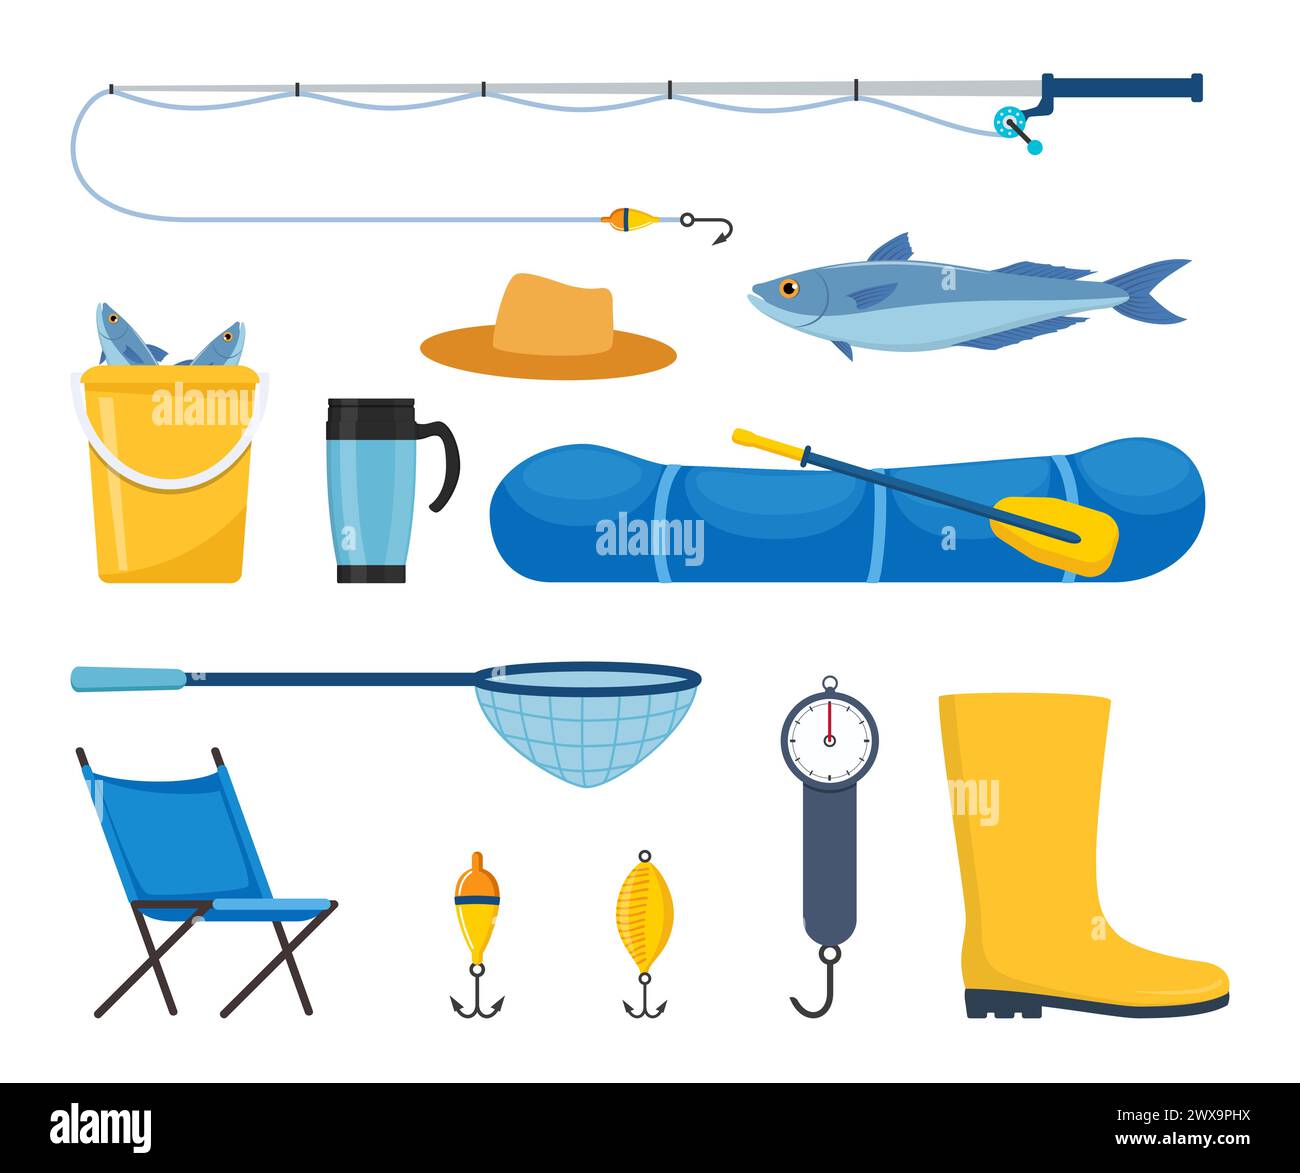 Equipos y herramientas para la pesca. Caña de pescar, flotador, barco de goma inflable, red de aterrizaje, ropa de los pescadores, gancho, pescado, sombrero, linterna, botas. Al aire libre Ilustración del Vector